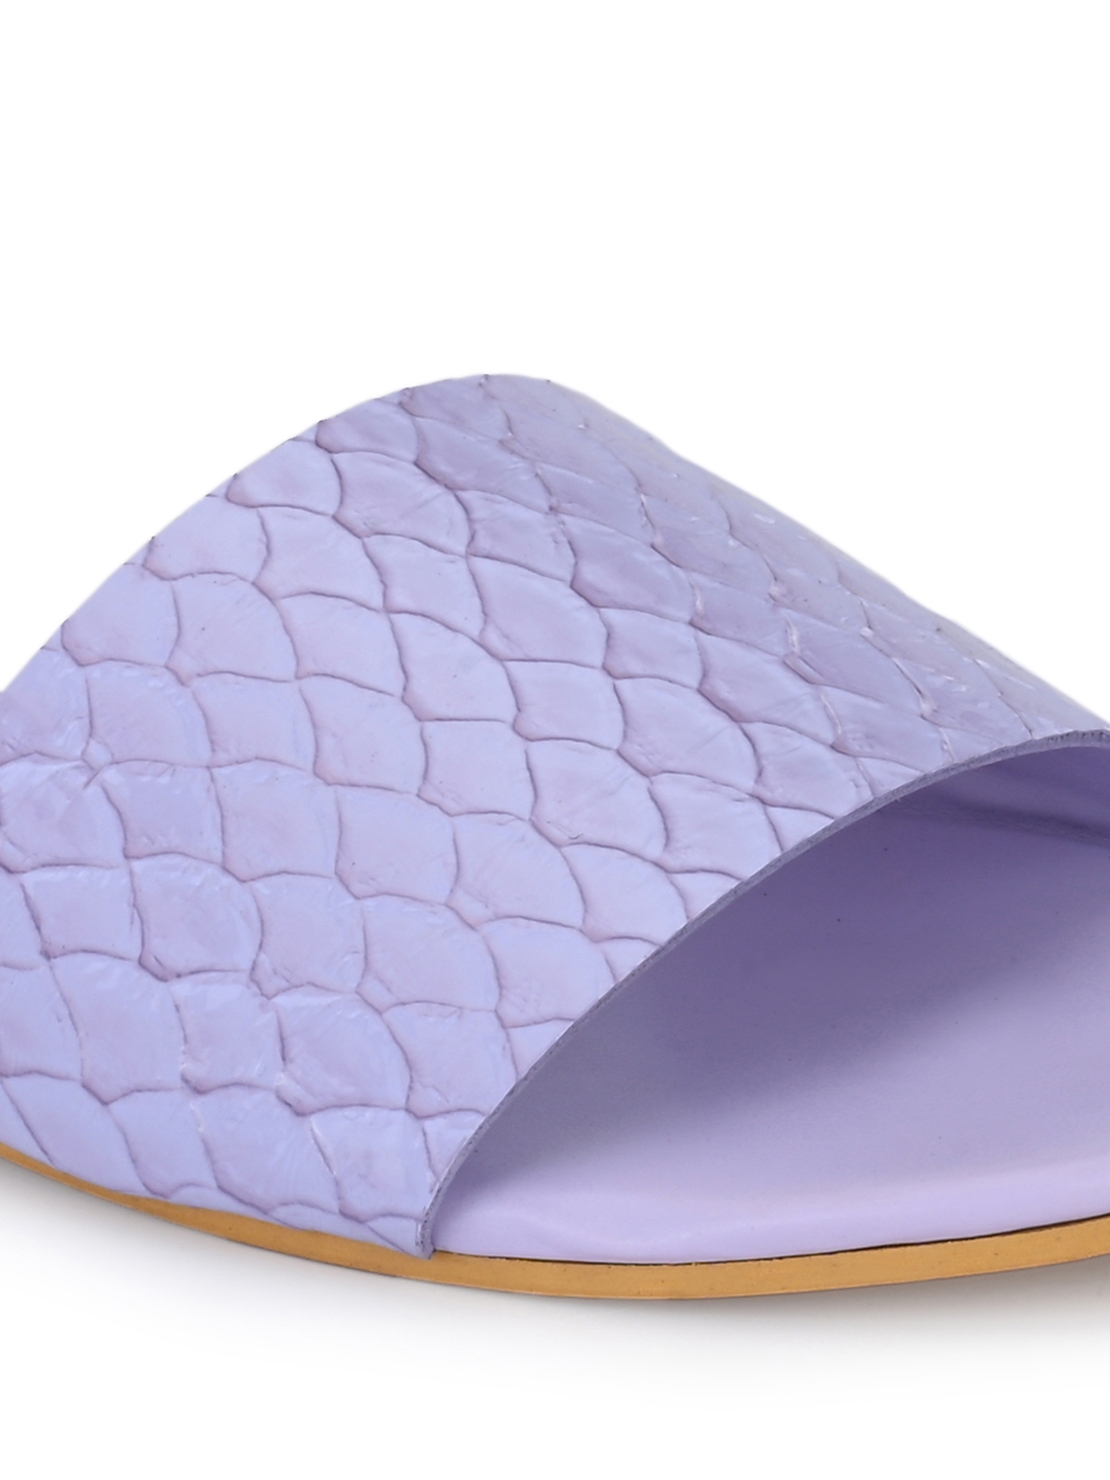 AADY AUSTIN | Aady Austin Lavender Open Toe Slider Flats for women 5